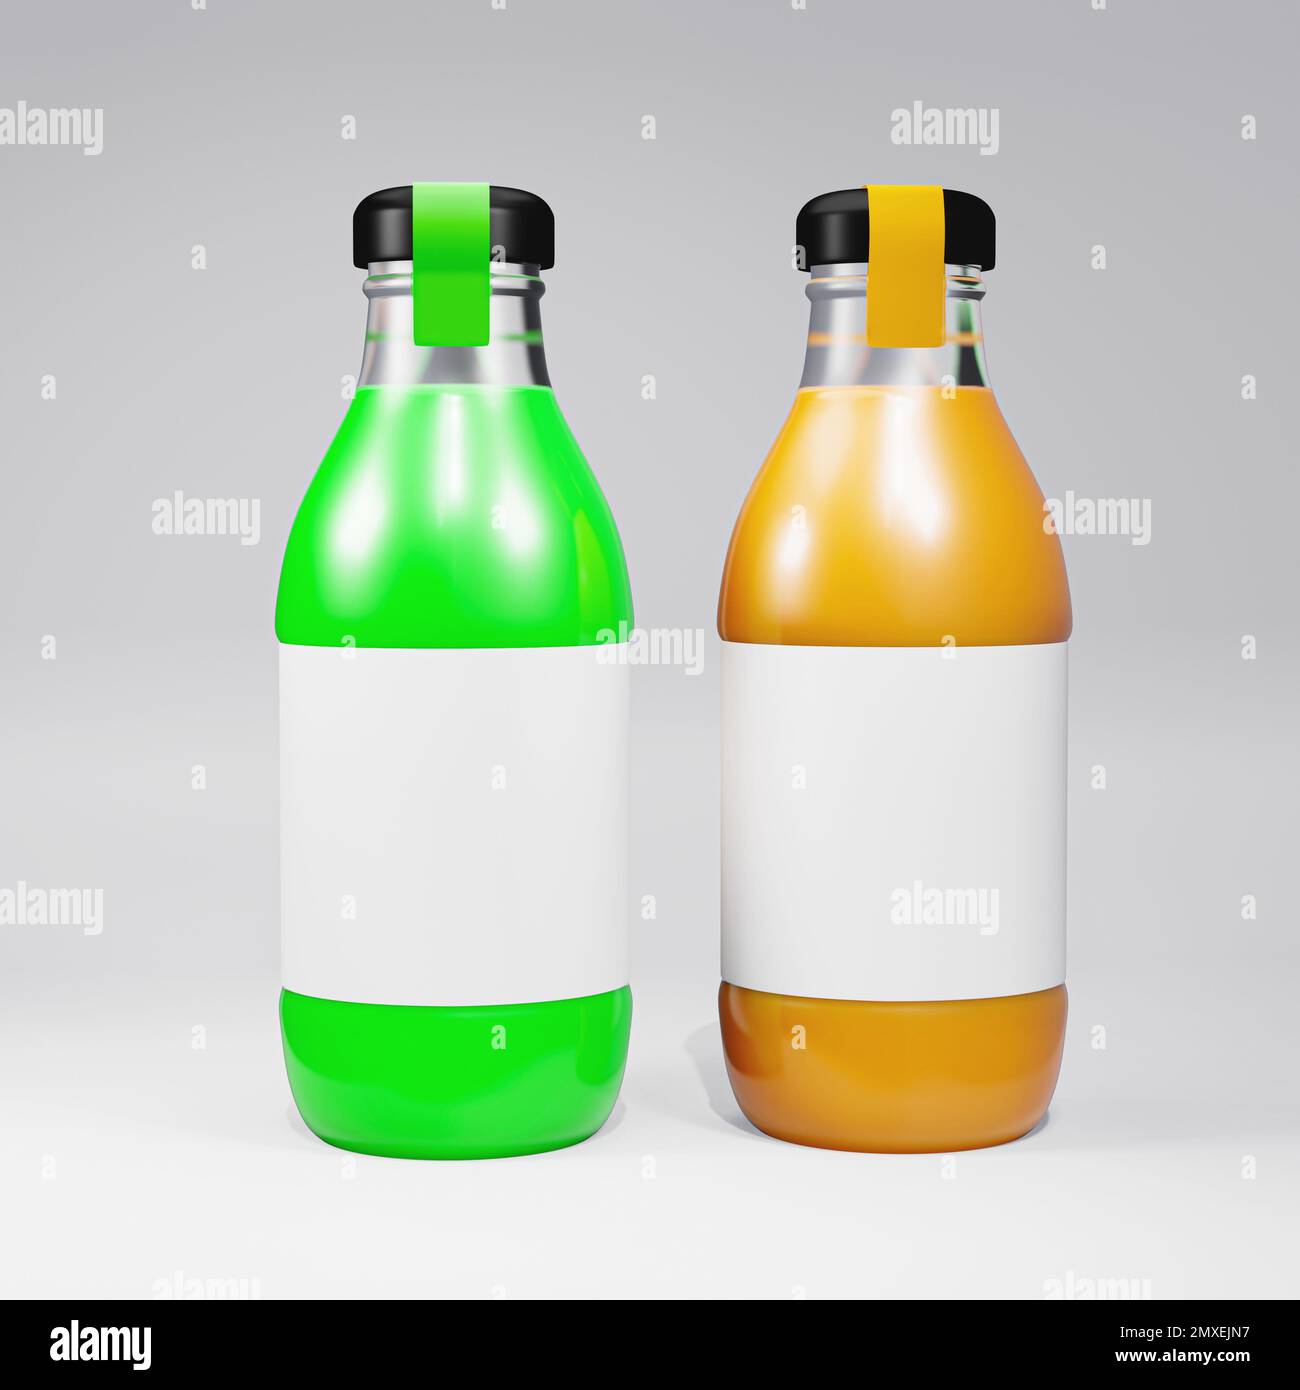 bottiglia di vetro di succo 3d che rende immagine vista frontale, vi è due bottiglie di vetro di colore arancione e verde Foto Stock